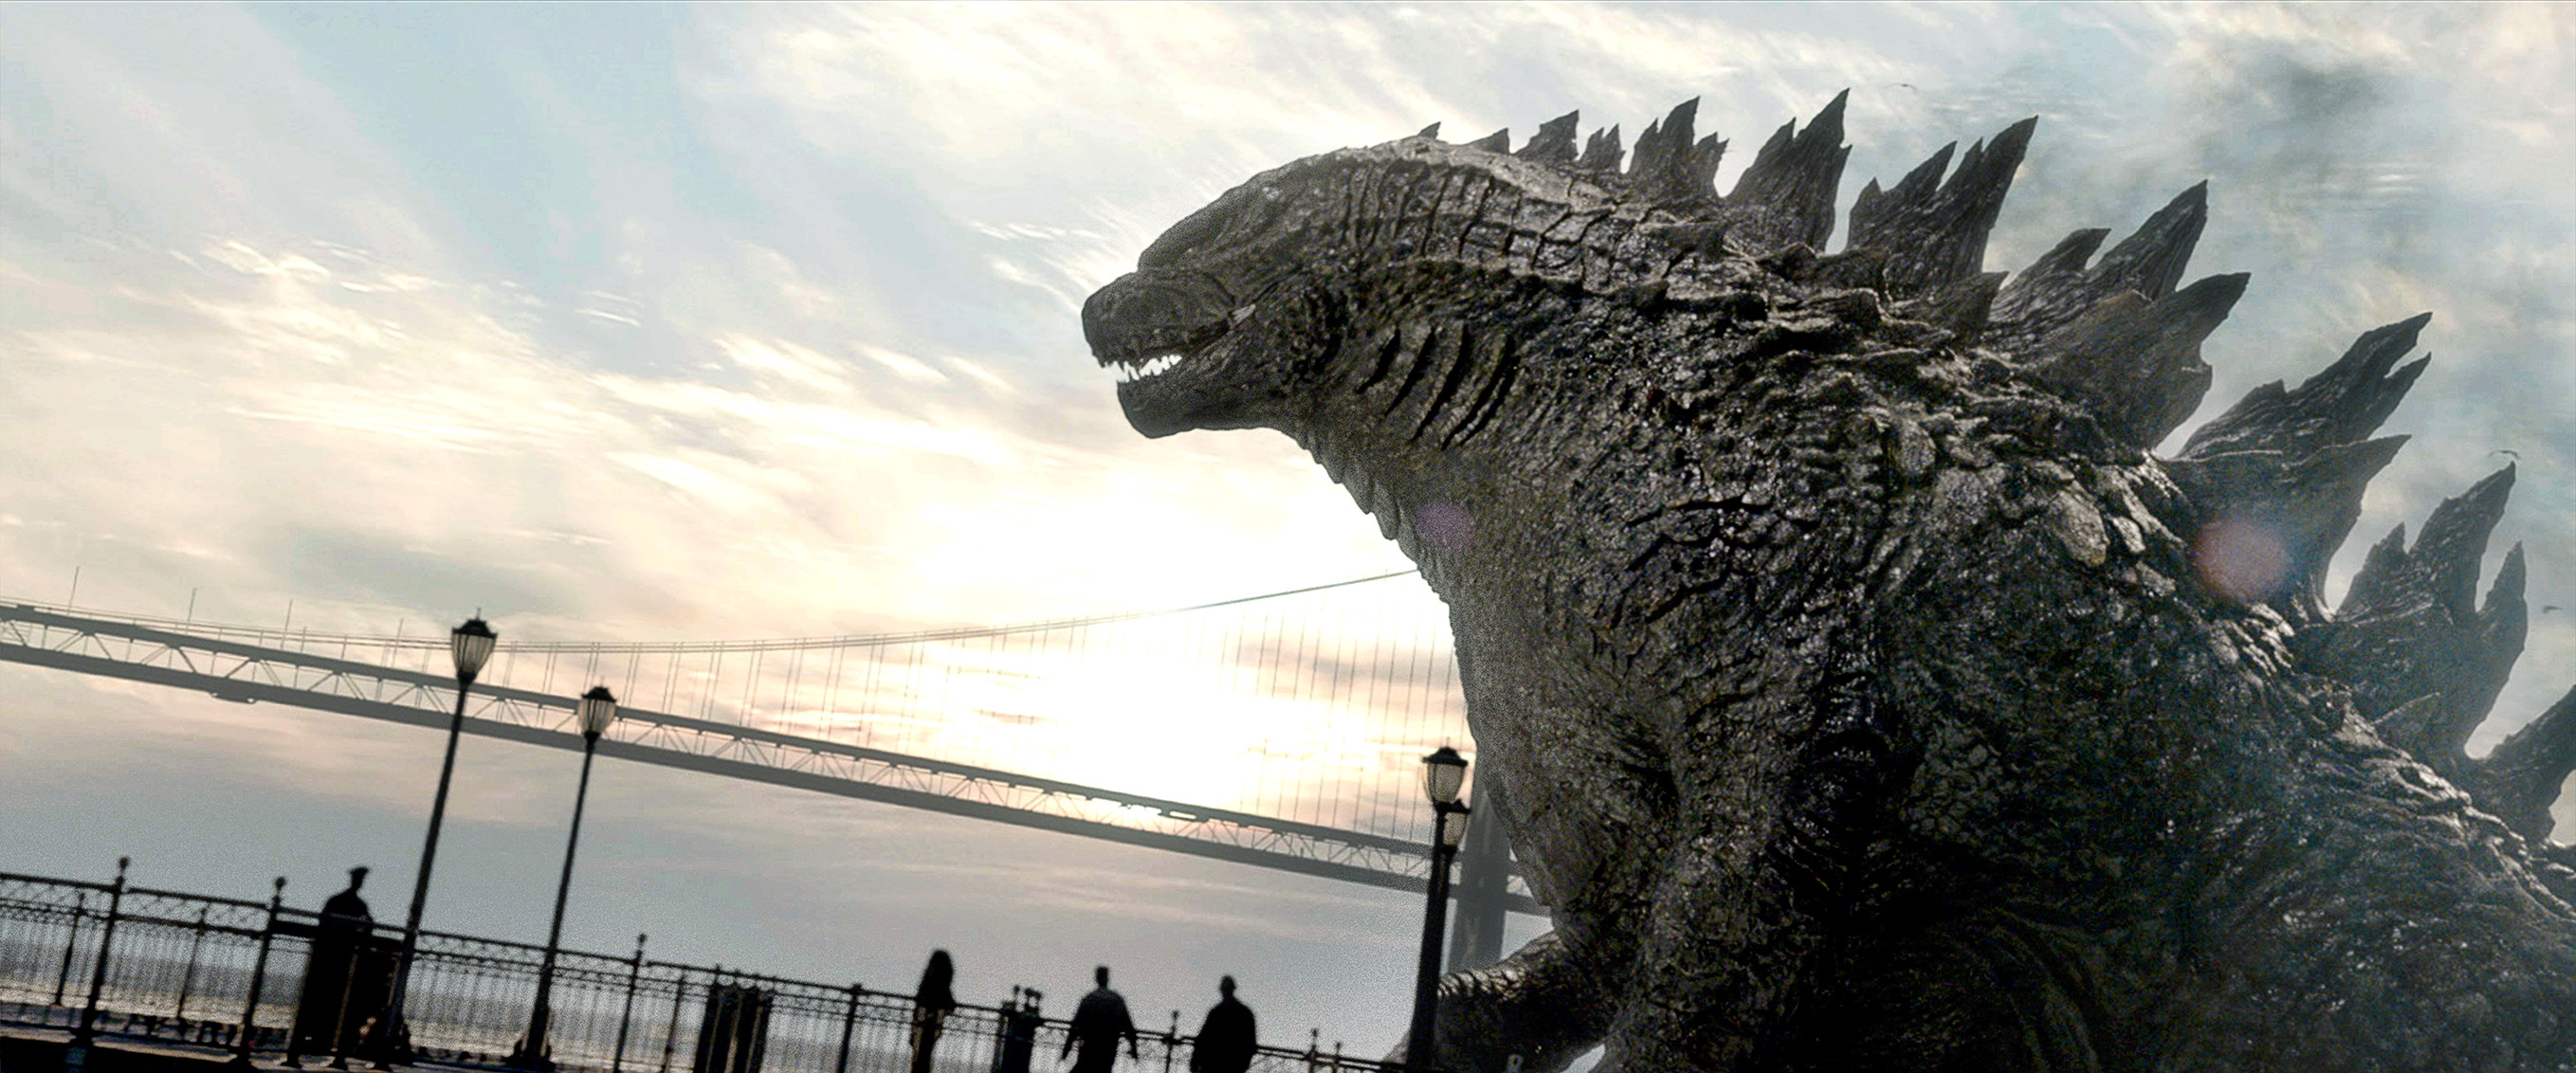 Image du film Godzilla df67e250-92d7-4a2c-8872-50778cc3f7d4